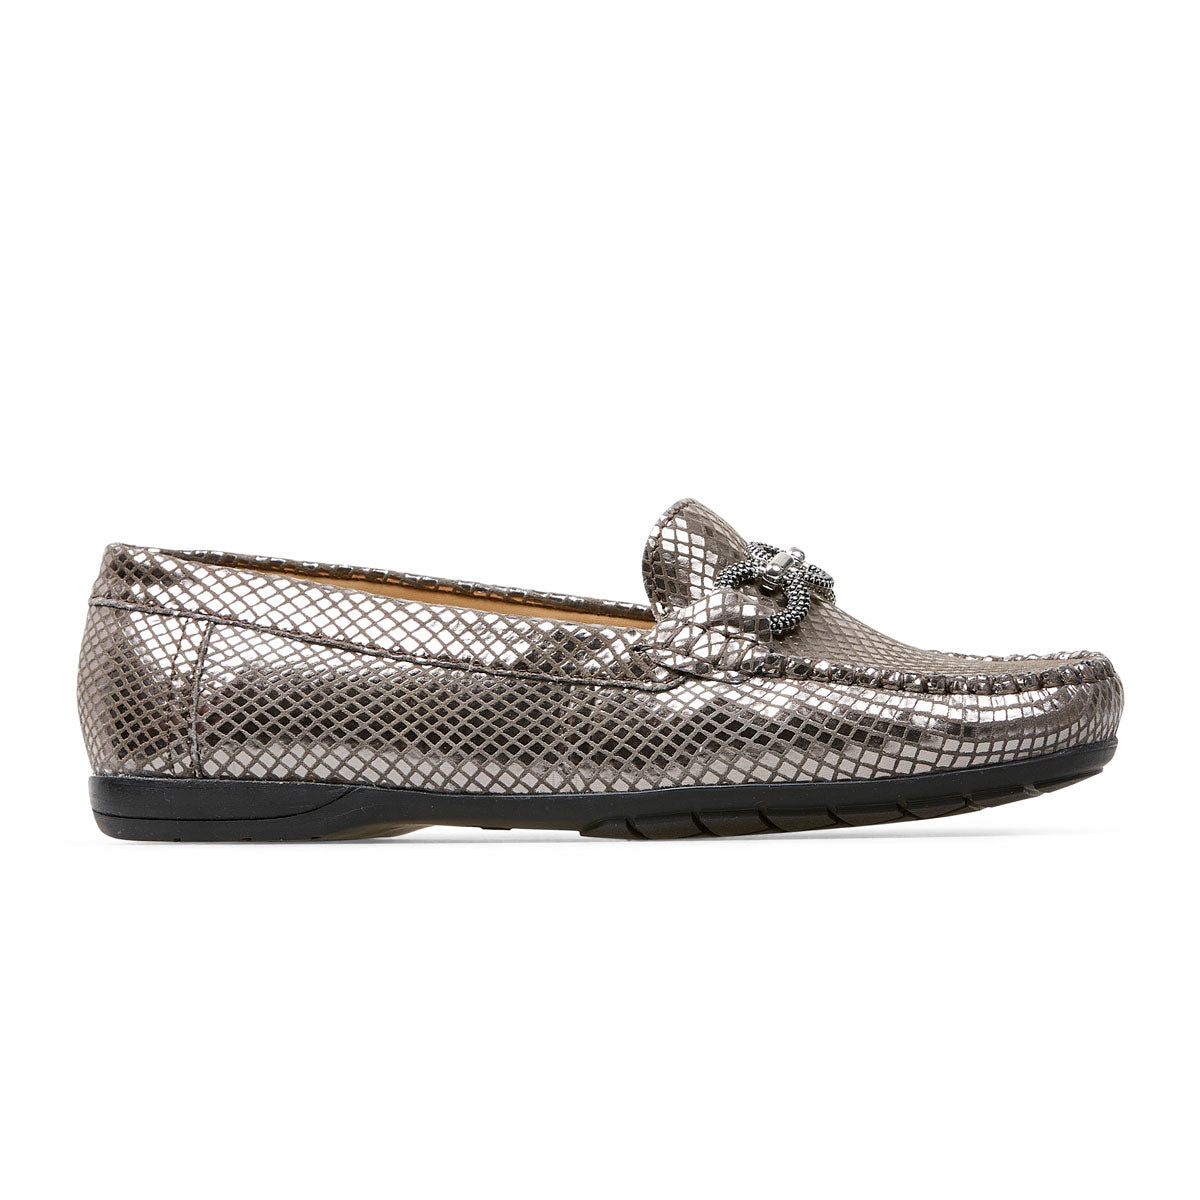 Van Dal Bliss II Ladies Loafer Shoe Metallic Print